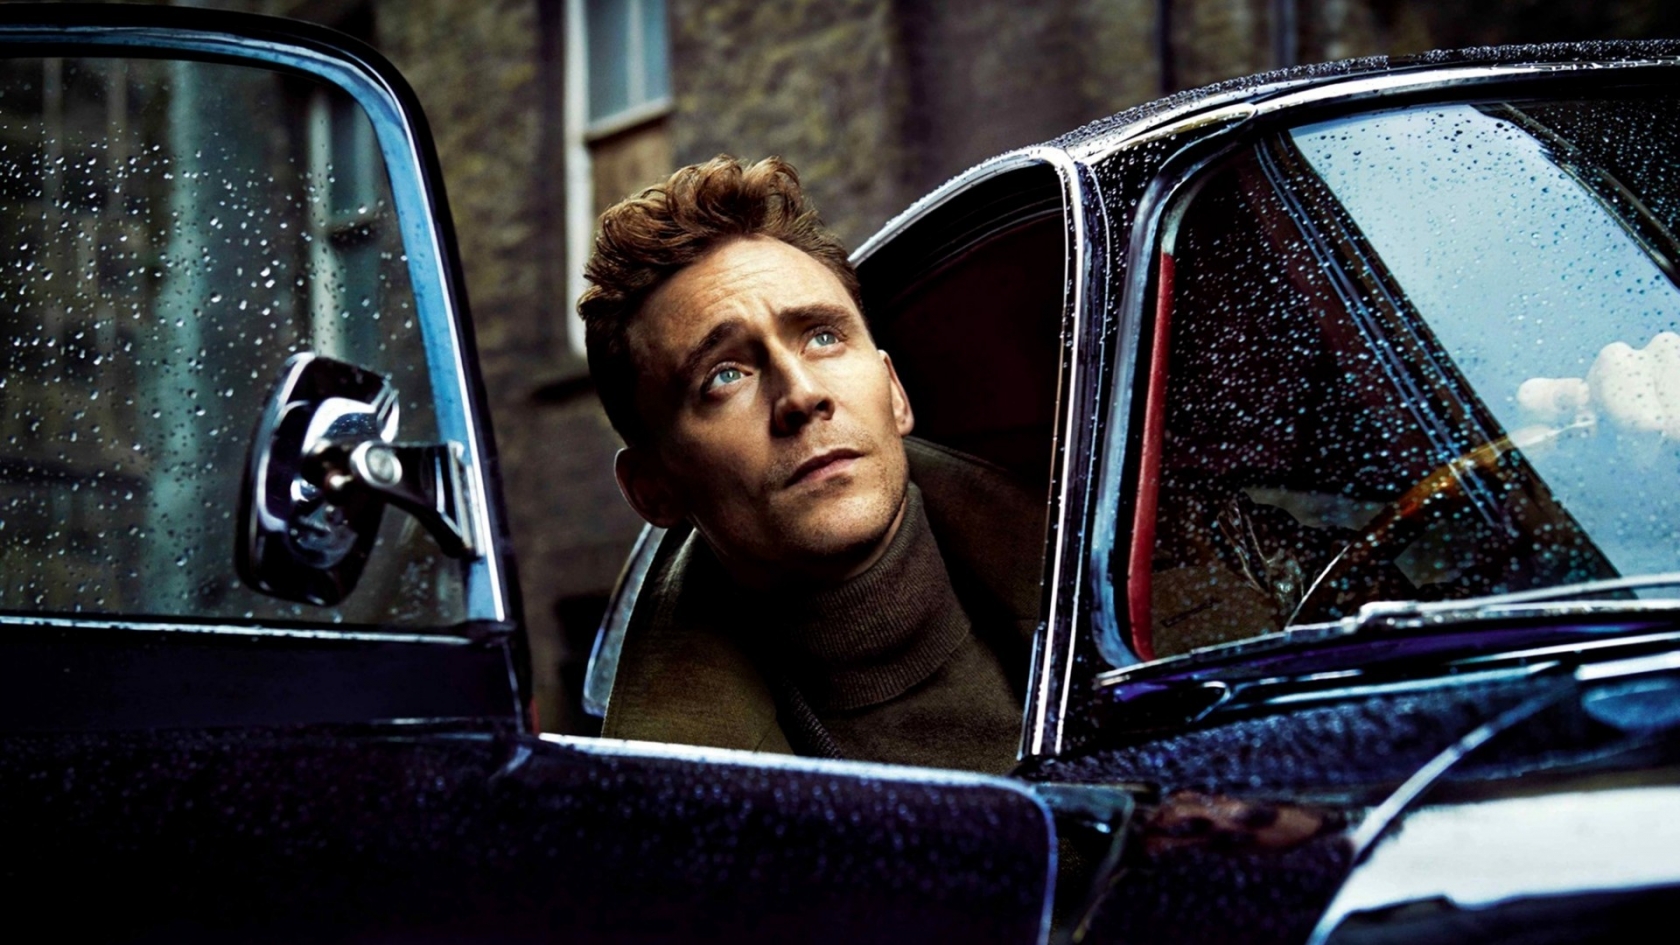 Tom Hiddleston Poster for 1680 x 945 HDTV resolution